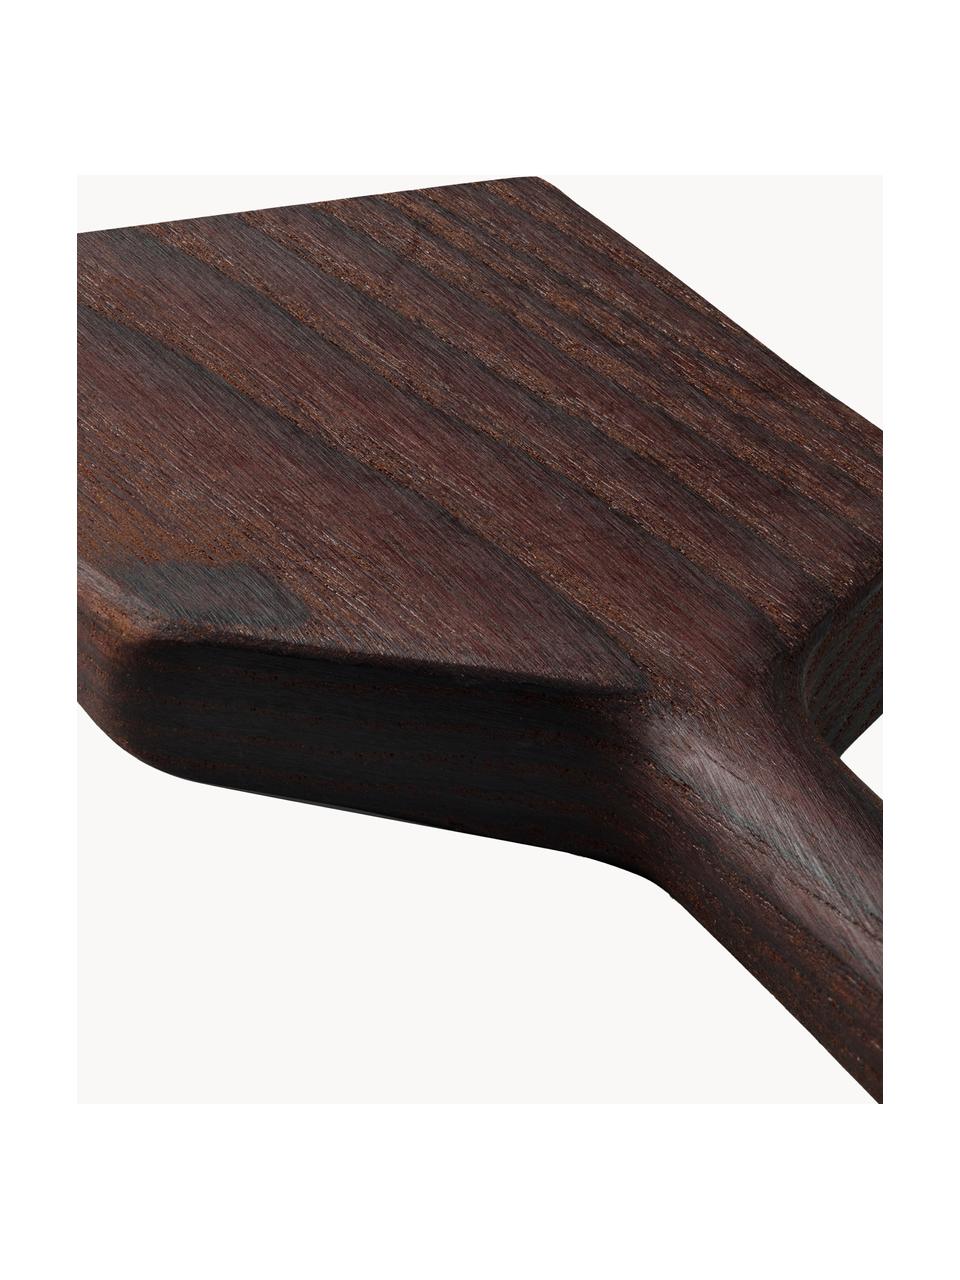 Obracečka z jasanového dřeva RÅ, Jasanové dřevo, certifikace FSC, Tmavé dřevo, D 30 cm